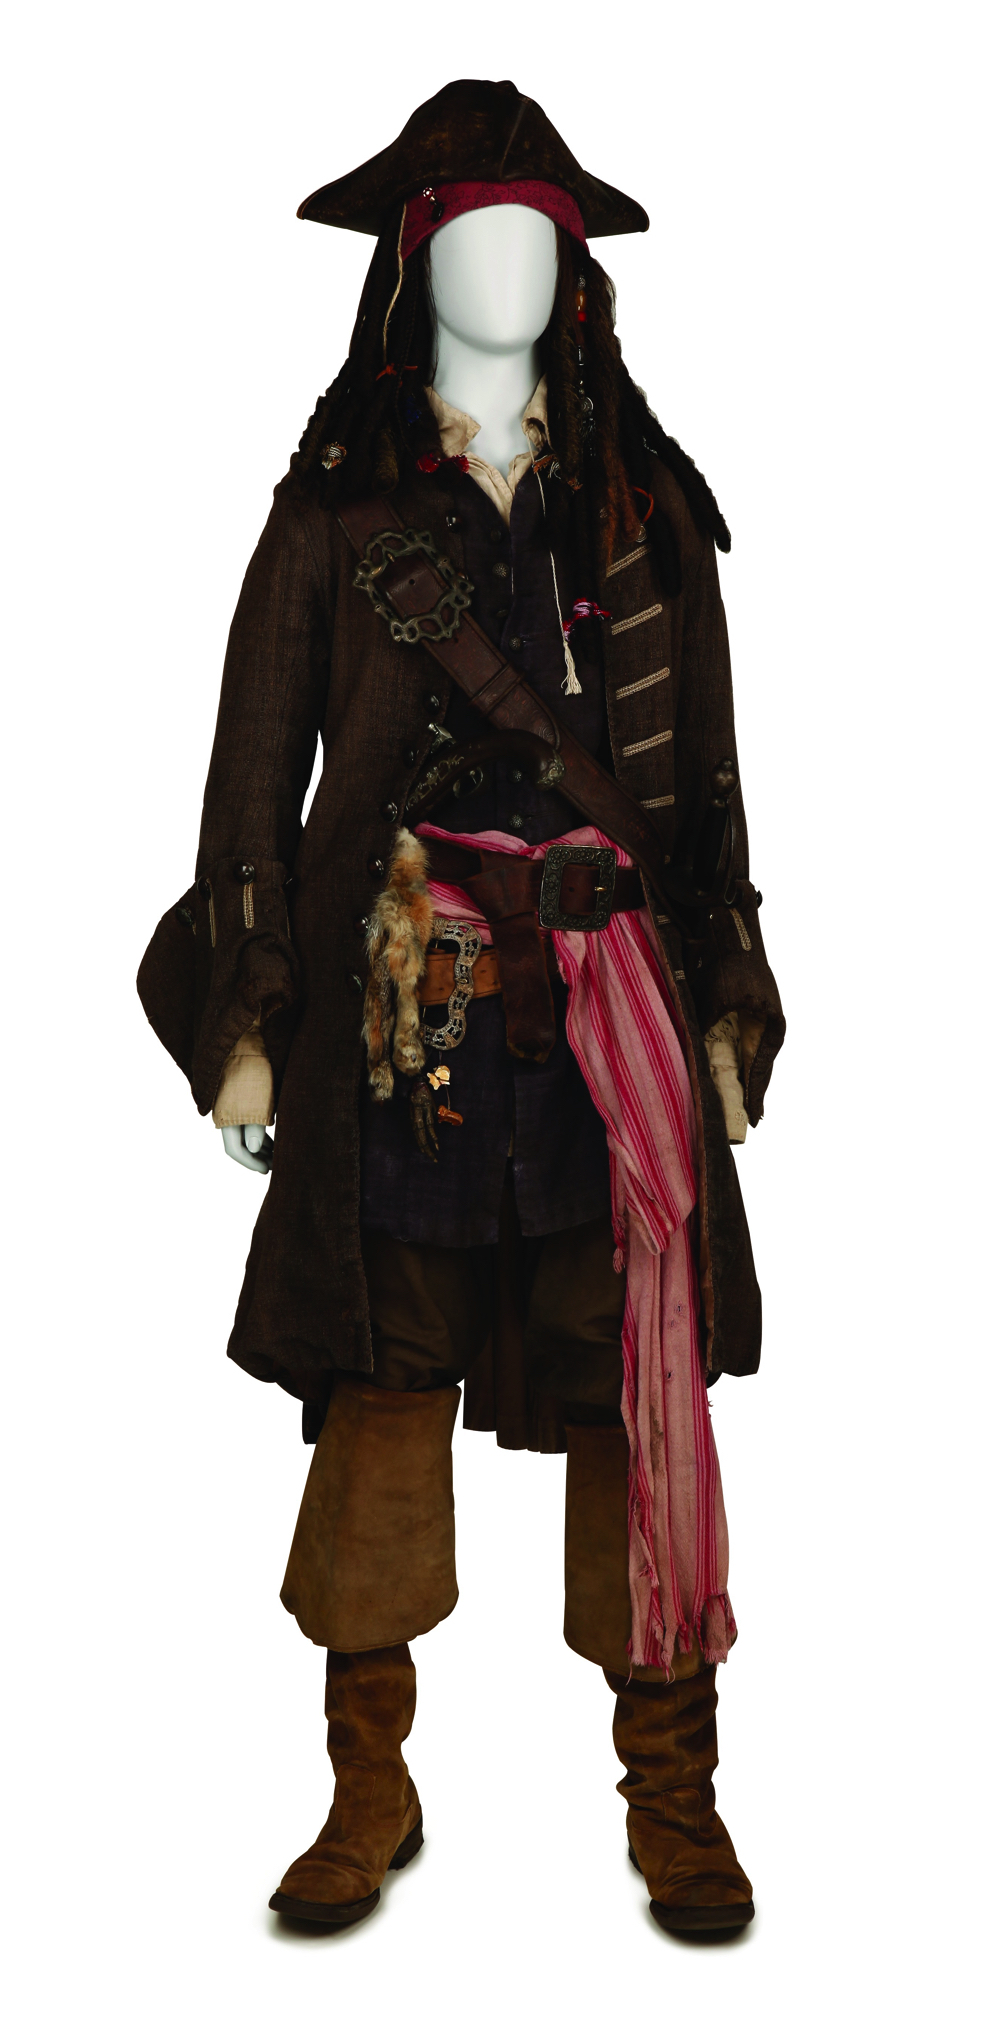 『パイレーツ・オブ・カリビアン/最後の海賊』 ジョニー・デップのアイディアが詰まった衣裳と小道具